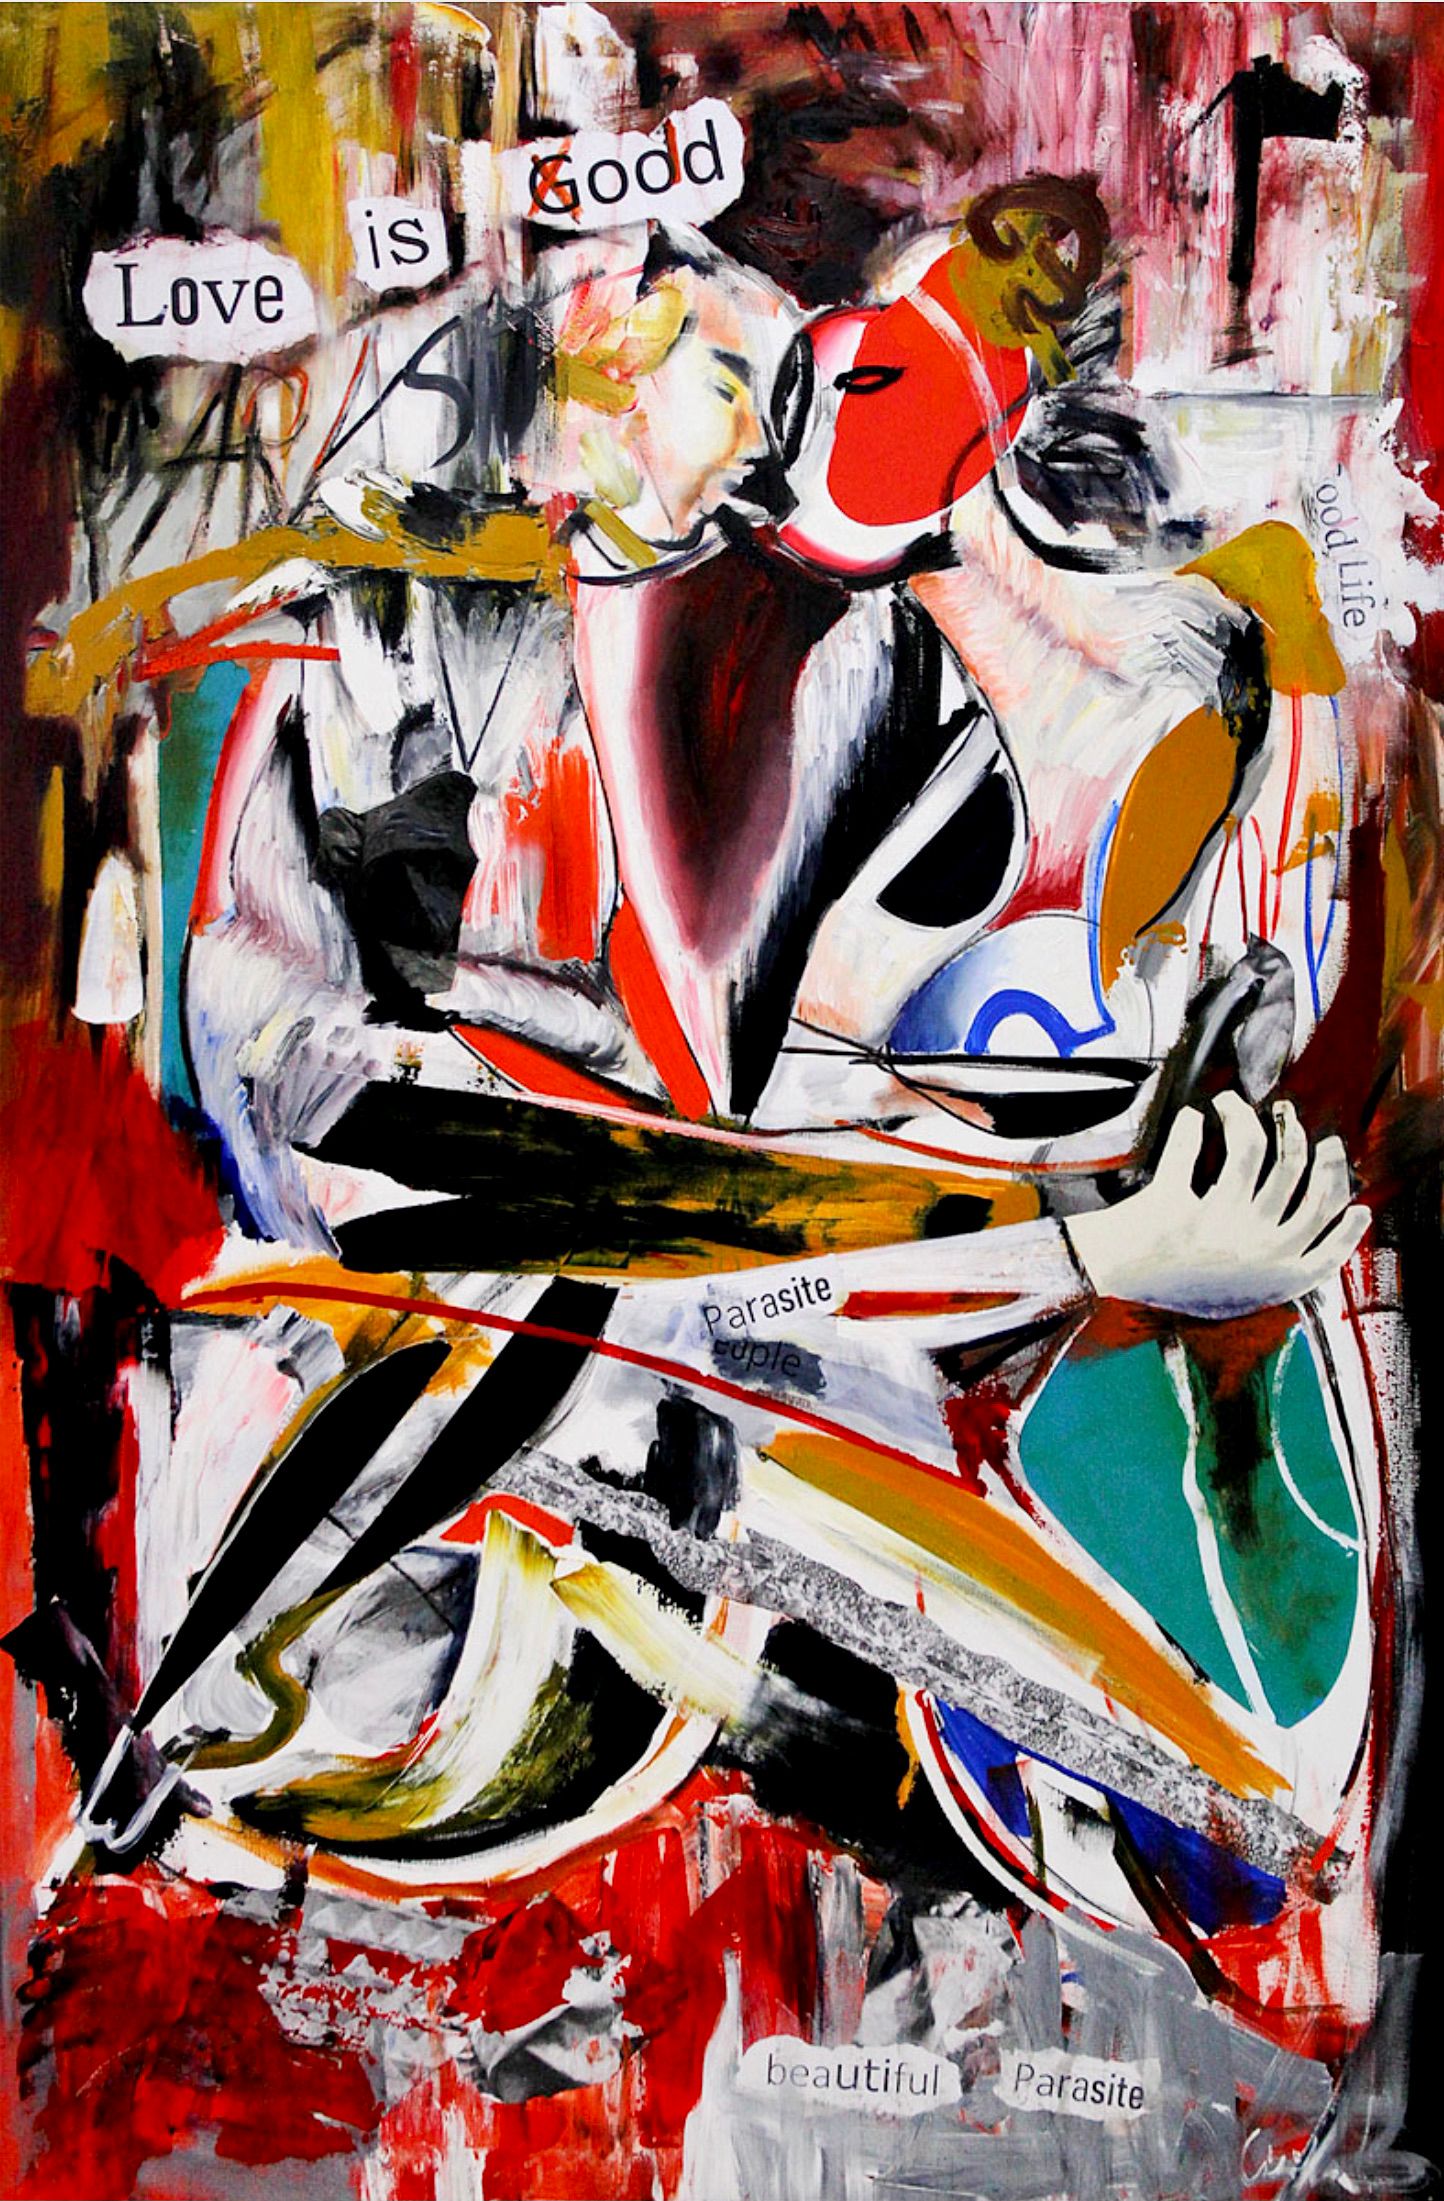 MECESLA Maciej Cieśla, "El amor es extraño", Pintura abstracta de colores sobre lienzo